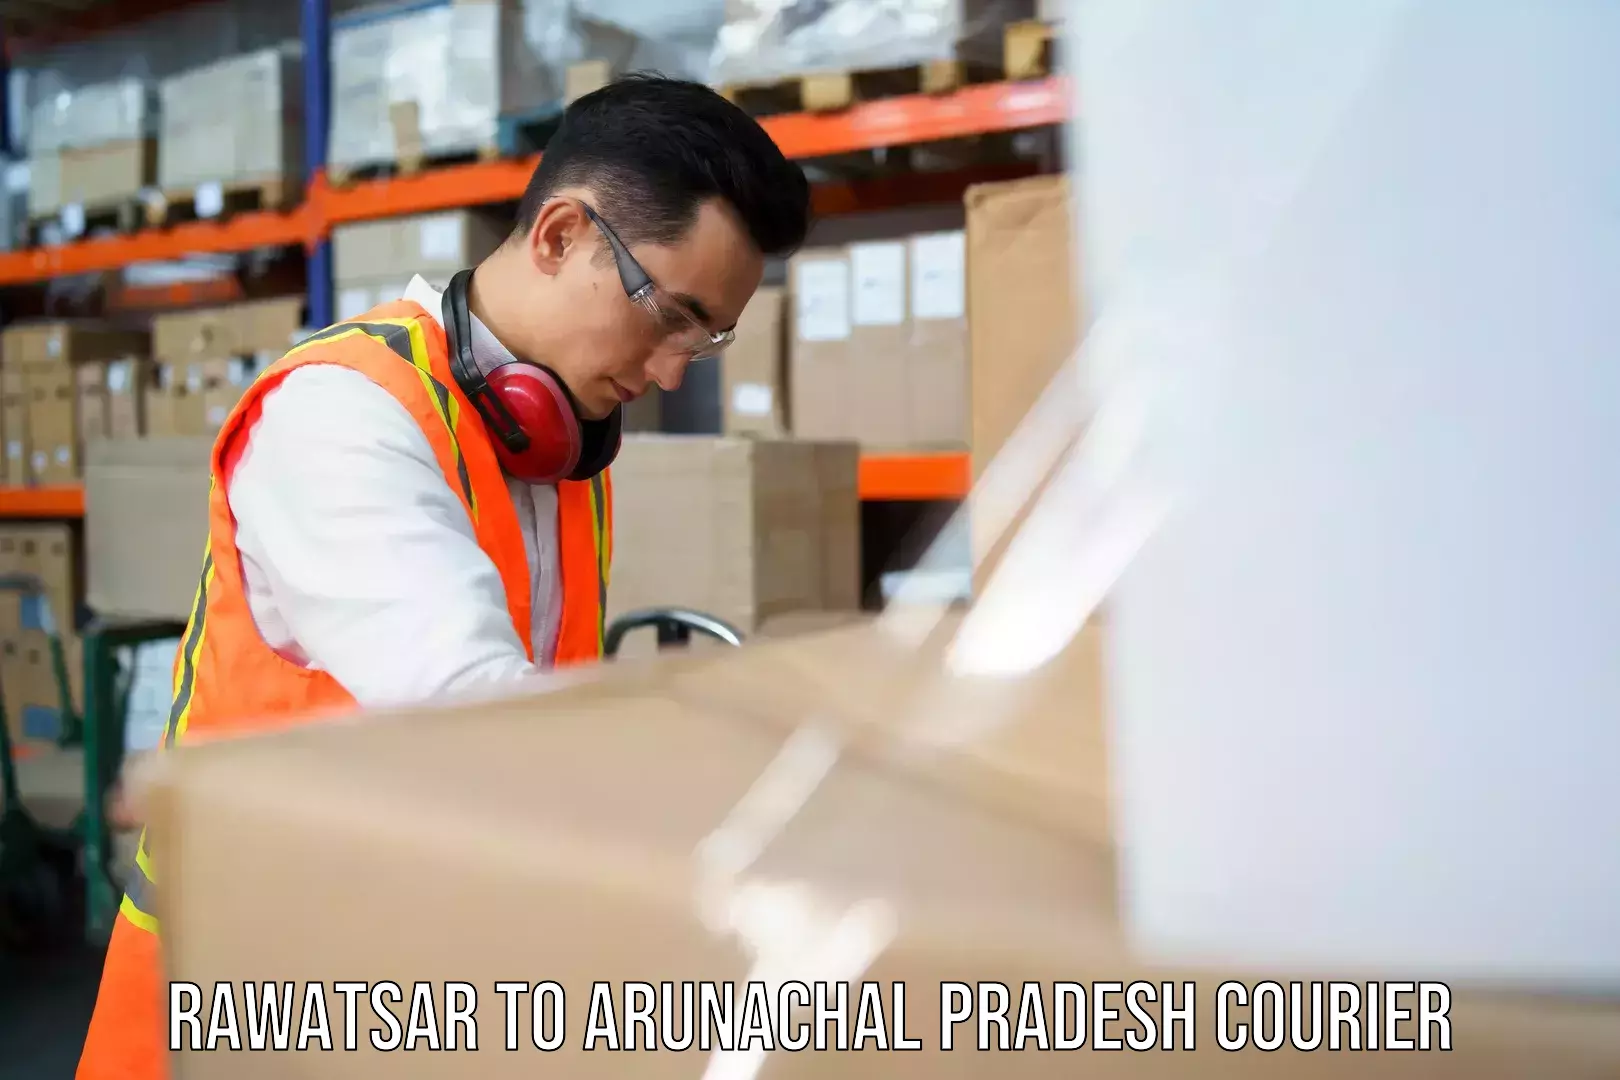 Logistics service provider Rawatsar to Upper Siang